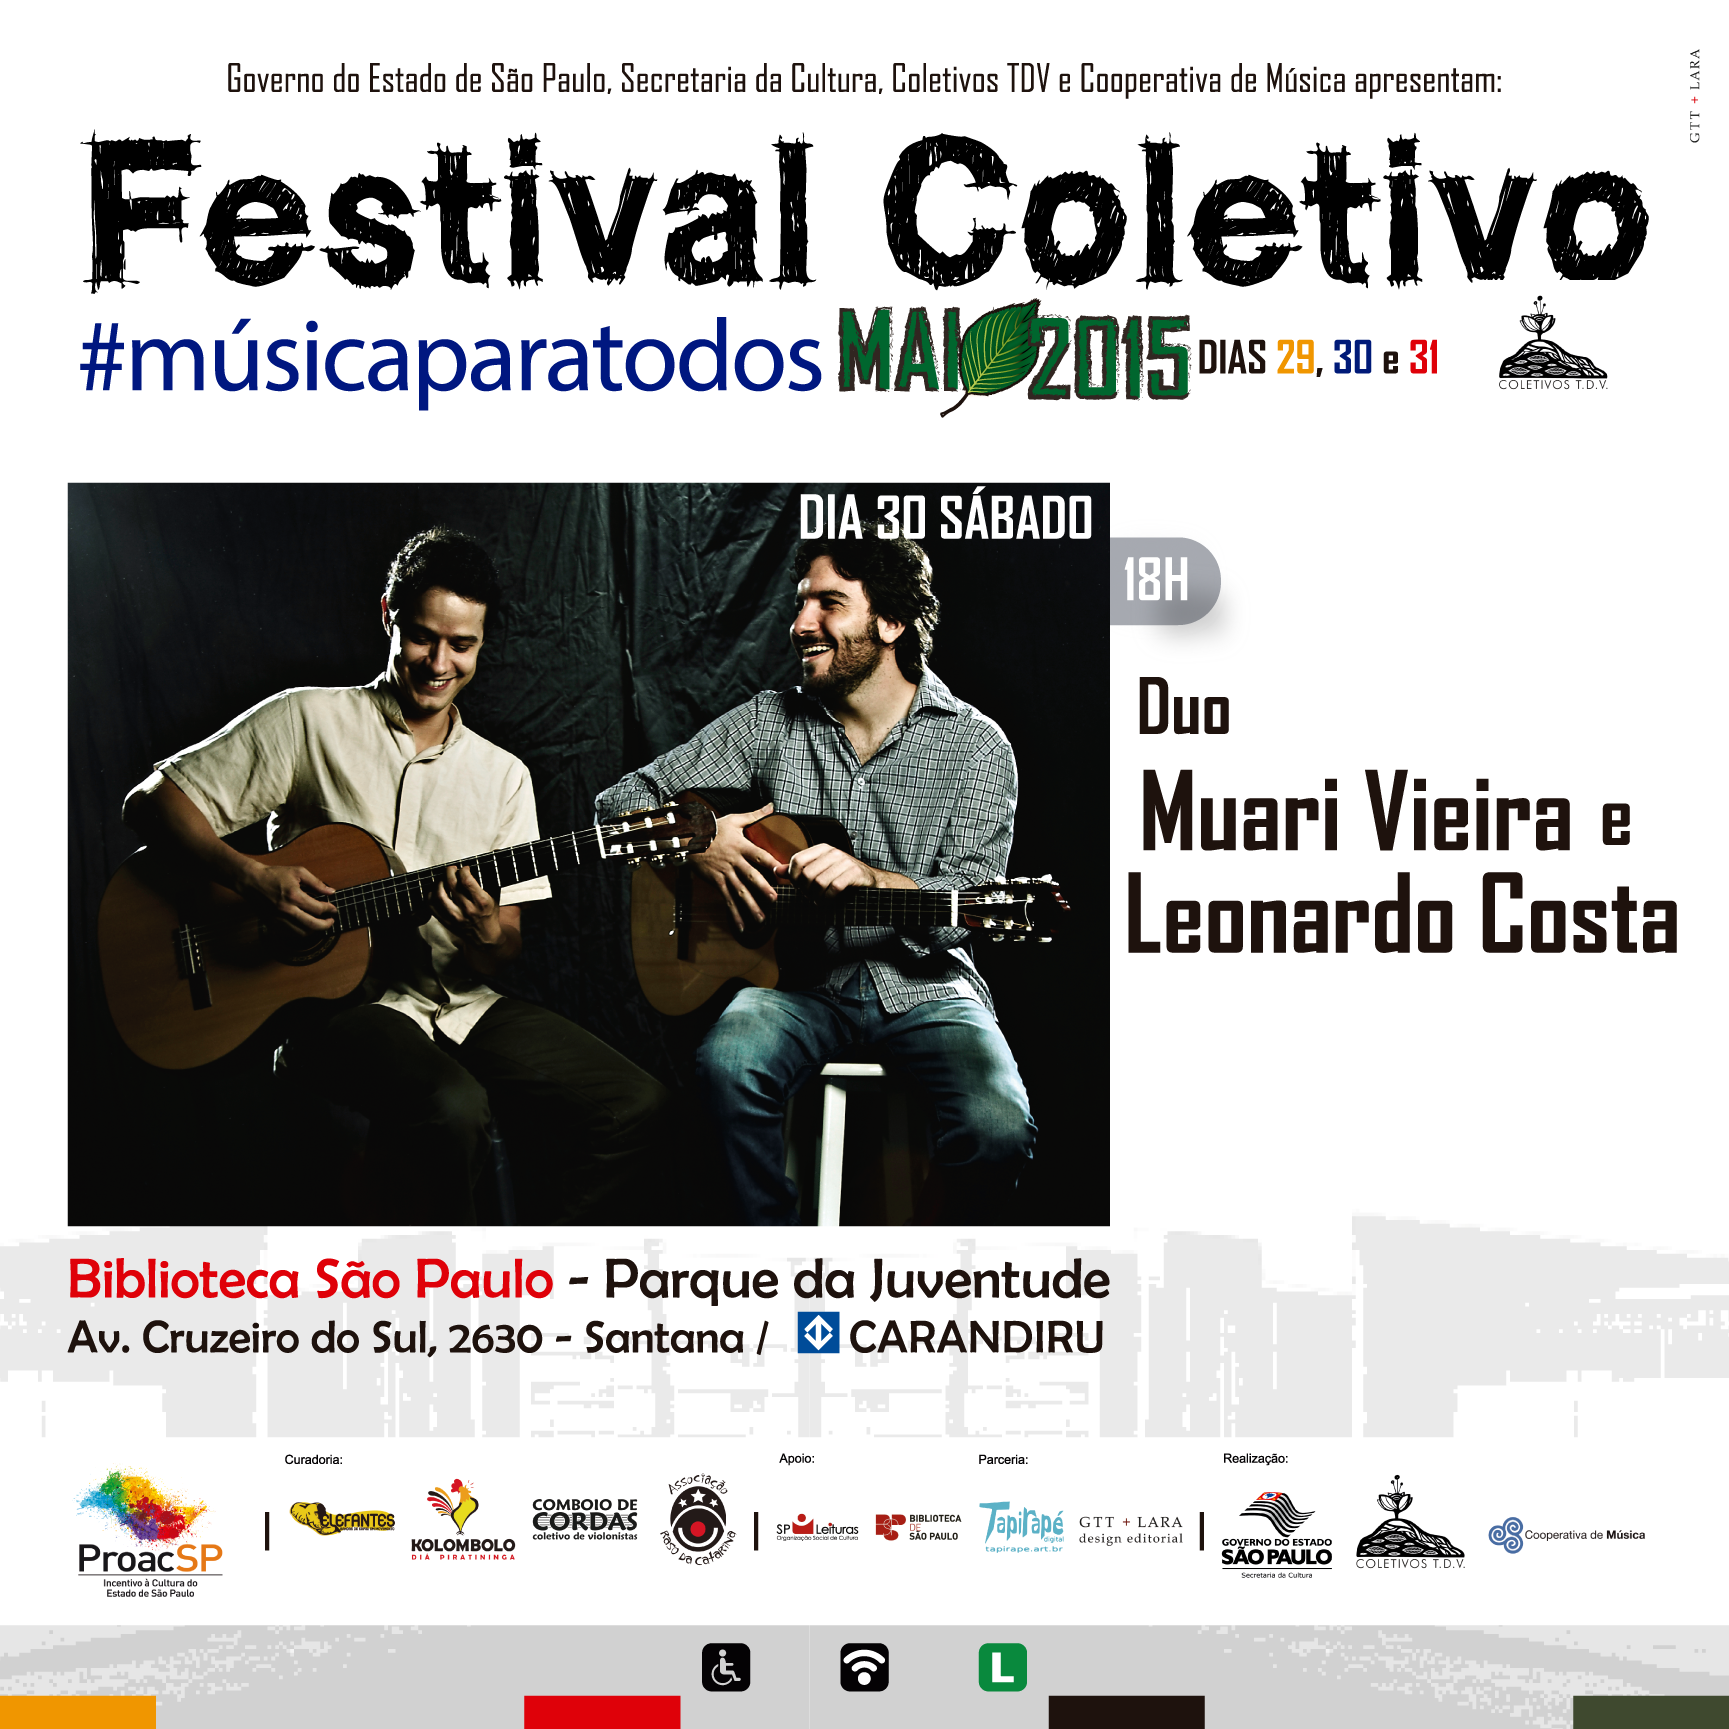 Duo Muari Vieira e Leonardo Costa 30maio2015 no Festival Coletivo no Pq da Juventude